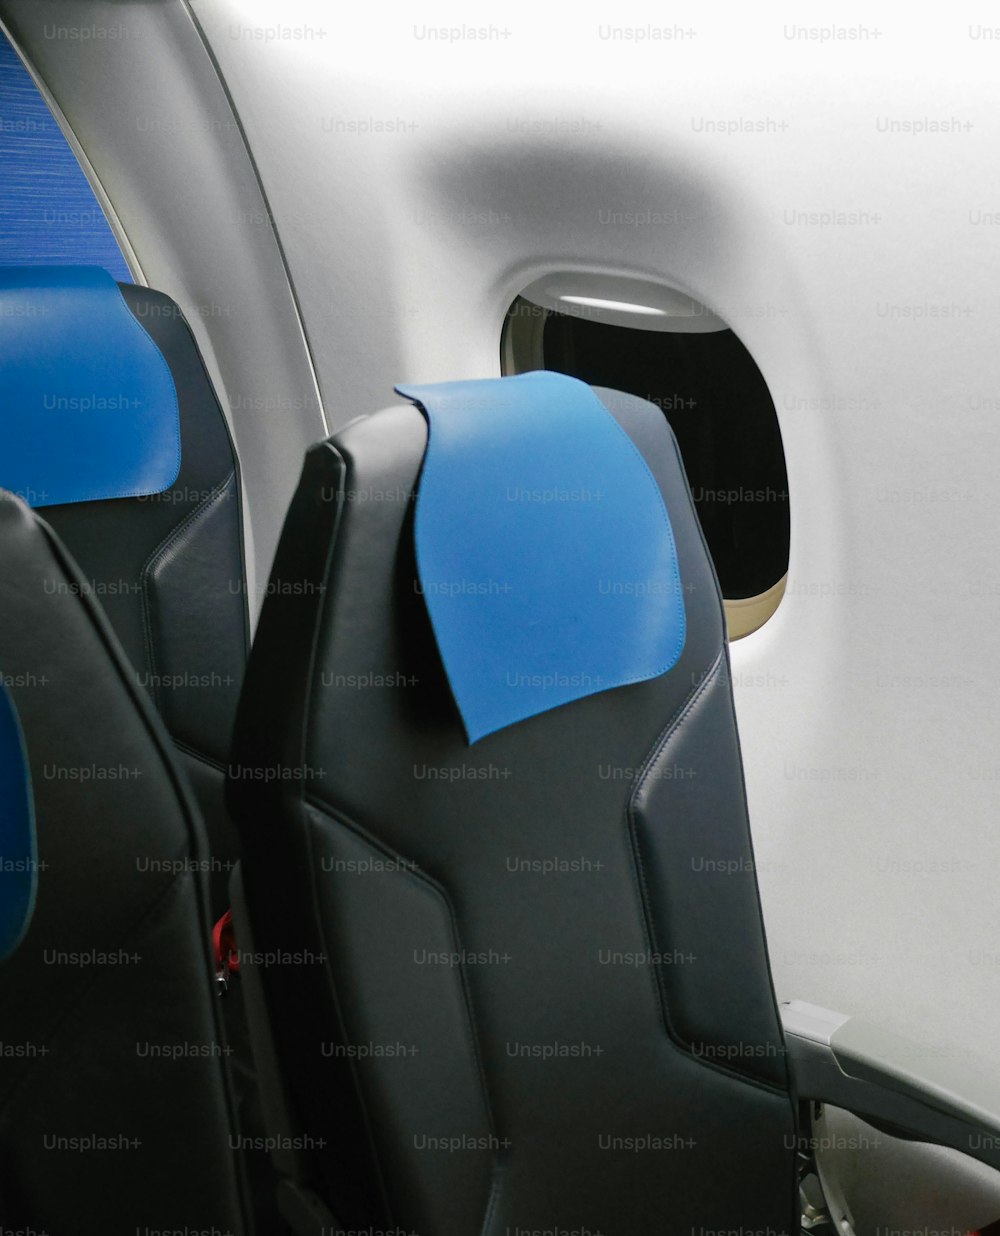 I sedili dell'aereo sono blu e neri